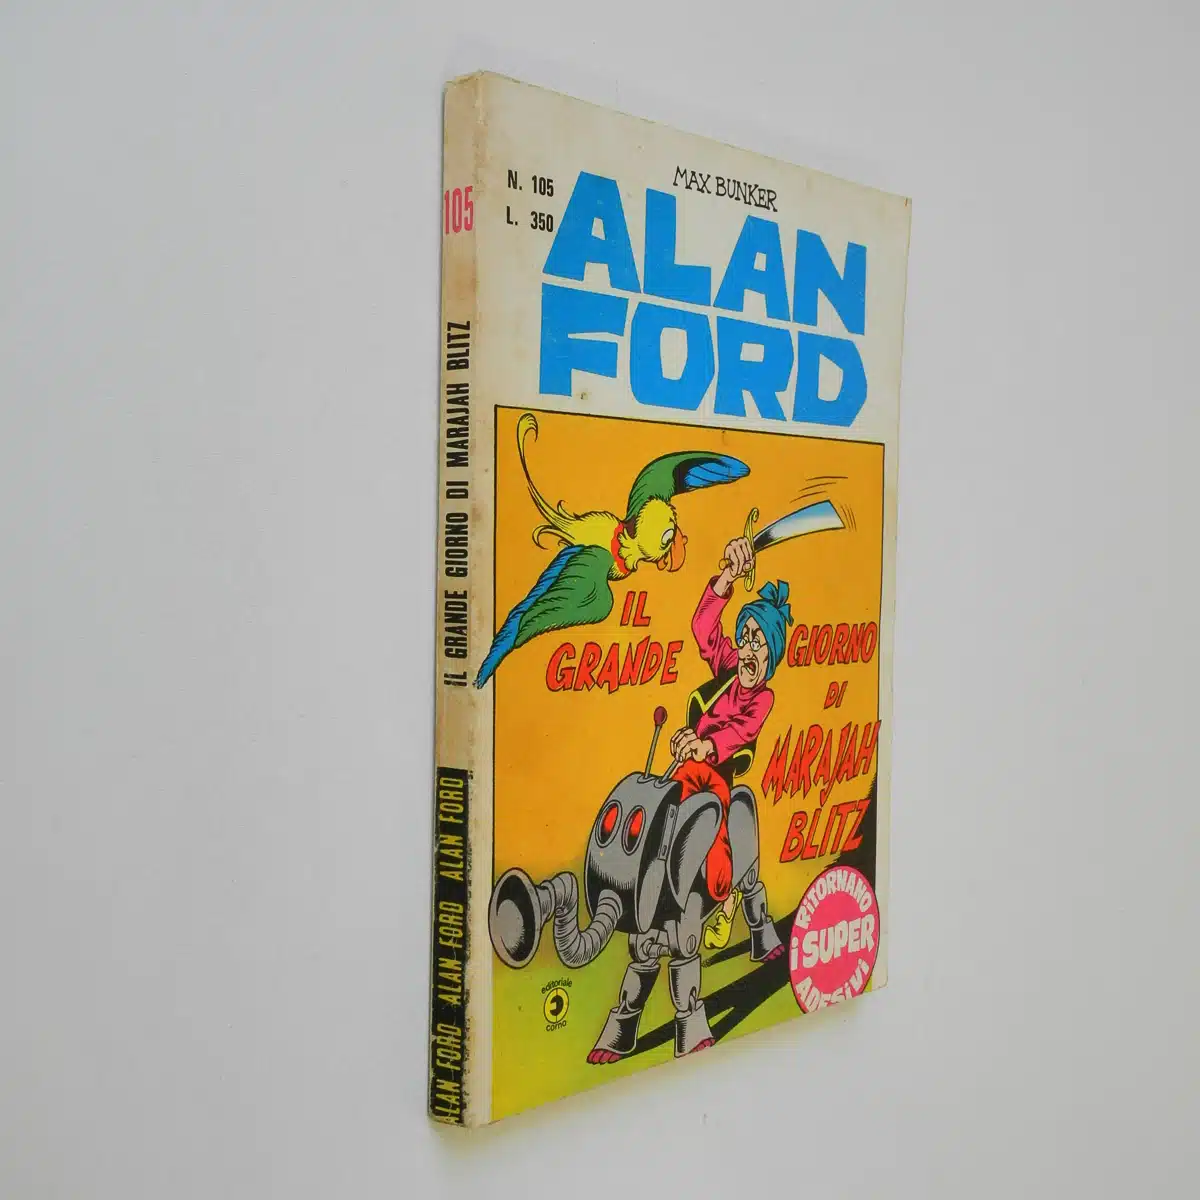 Alan Ford n. 105 con Adesivi Il grande giorno di Mrajah Blitz